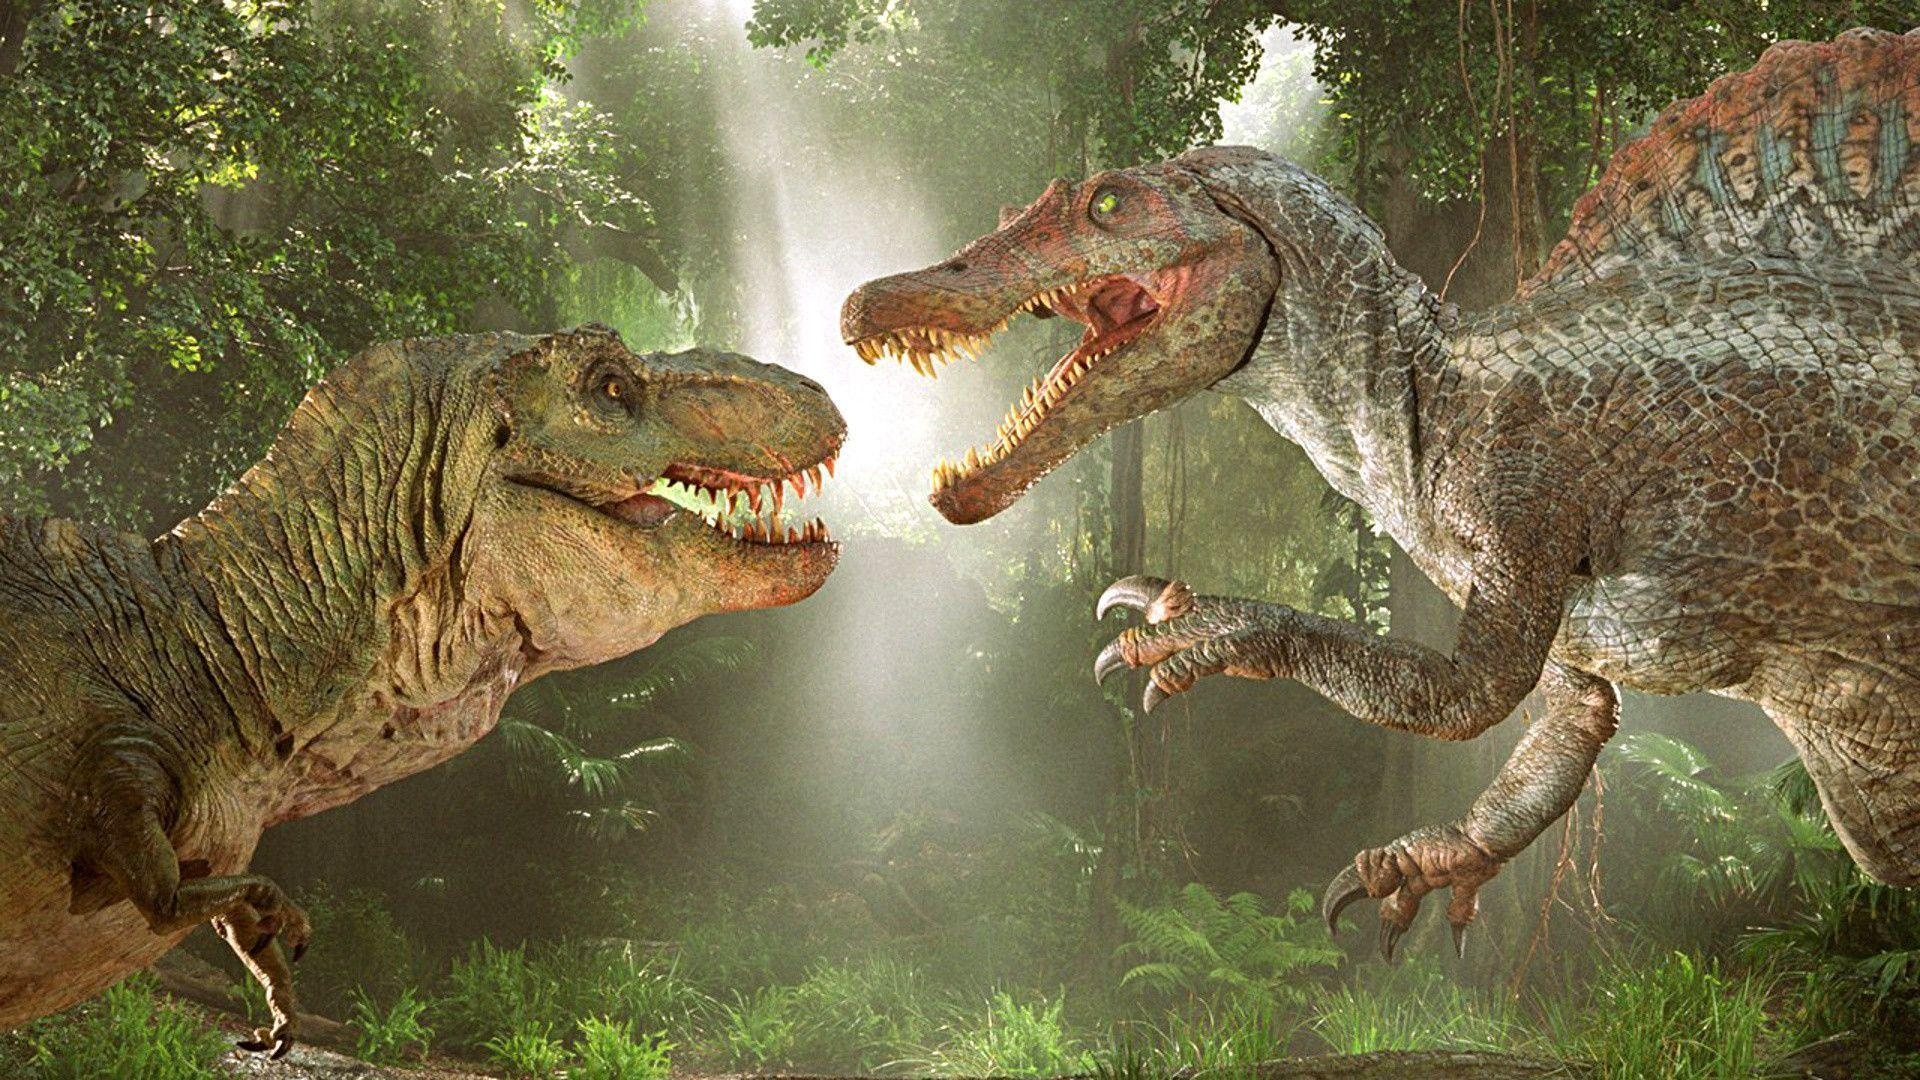 Spinosaurus 4K wallpapers, High-resolution images, Ultra HD display, Dinosaur fascination, 1920x1080 Full HD Desktop